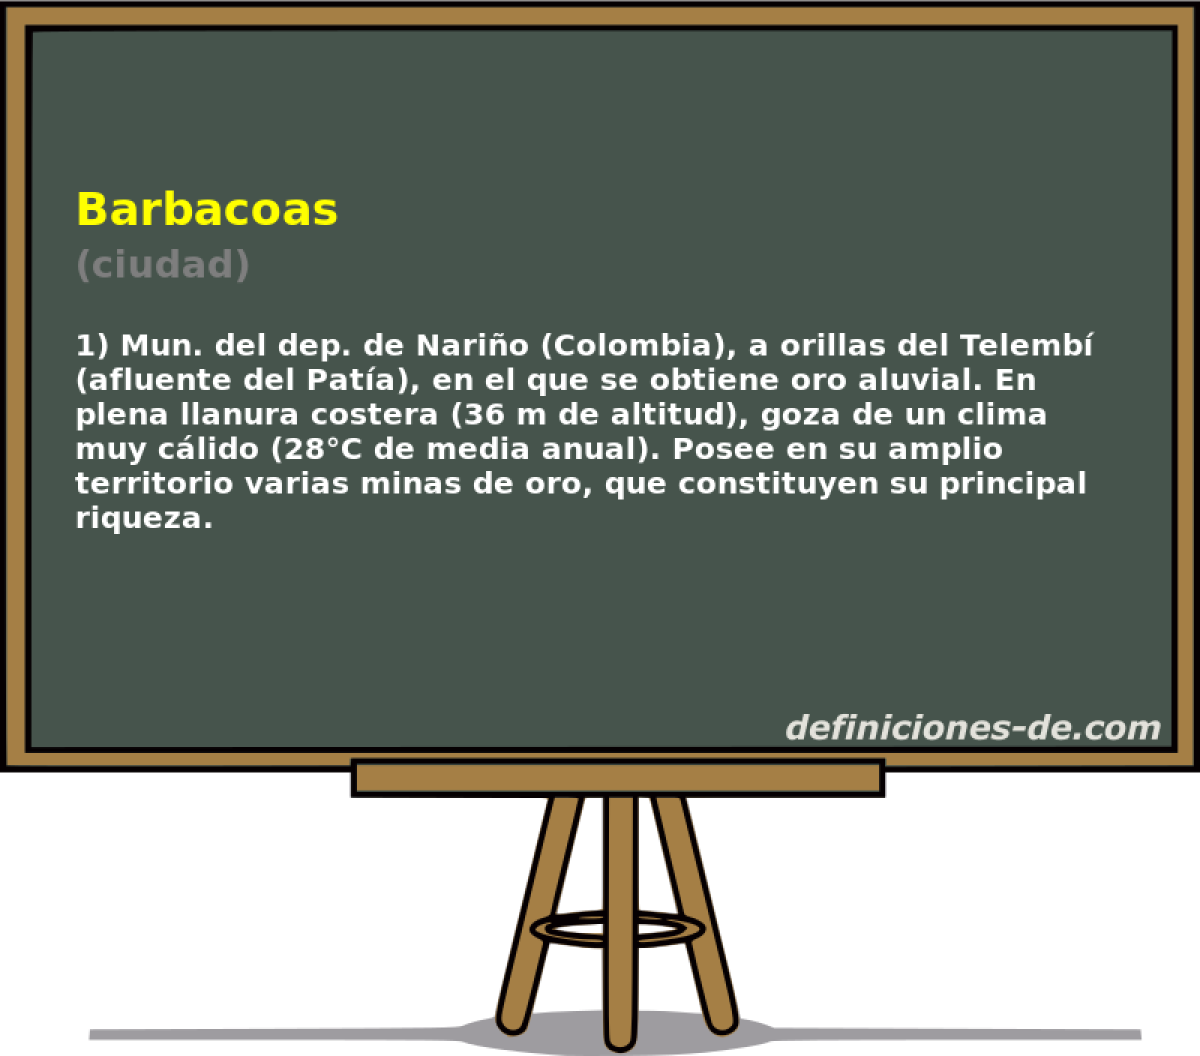 Barbacoas (ciudad)